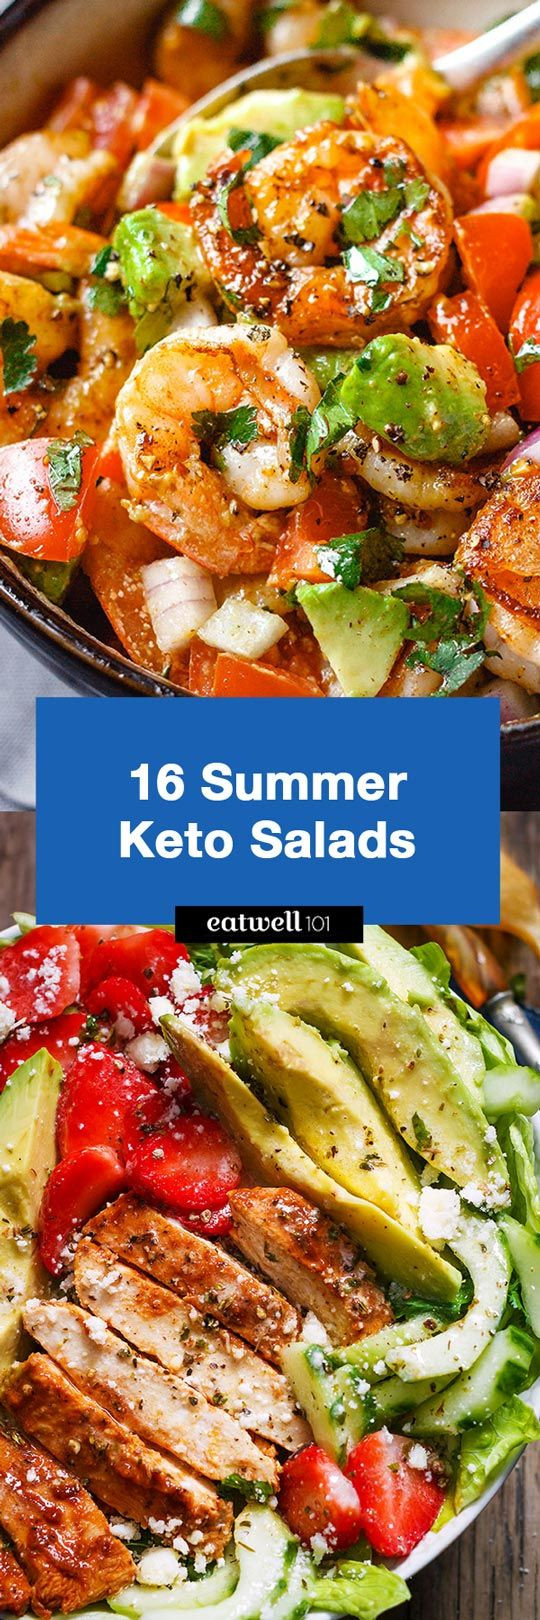 Summer Keto Recipes Dinner
 16 Best Summer Keto Salad Recipes